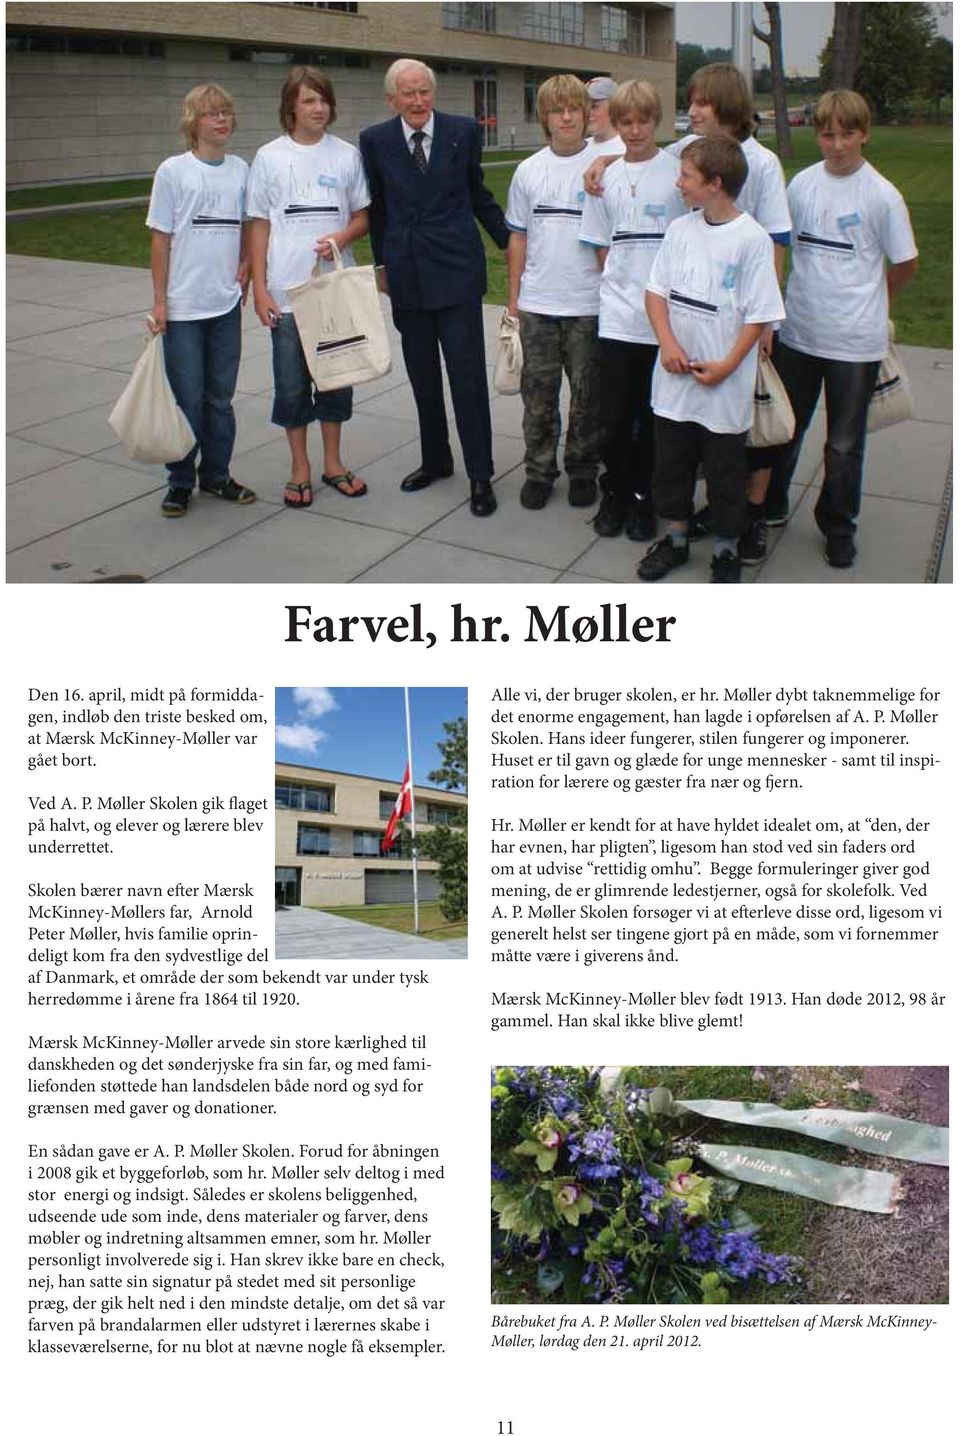 Skolen bærer navn efter Mærsk McKinney-Møllers far, Arnold Peter Møller, hvis familie oprindeligt kom fra den sydvestlige del af Danmark, et område der som bekendt var under tysk herredømme i årene